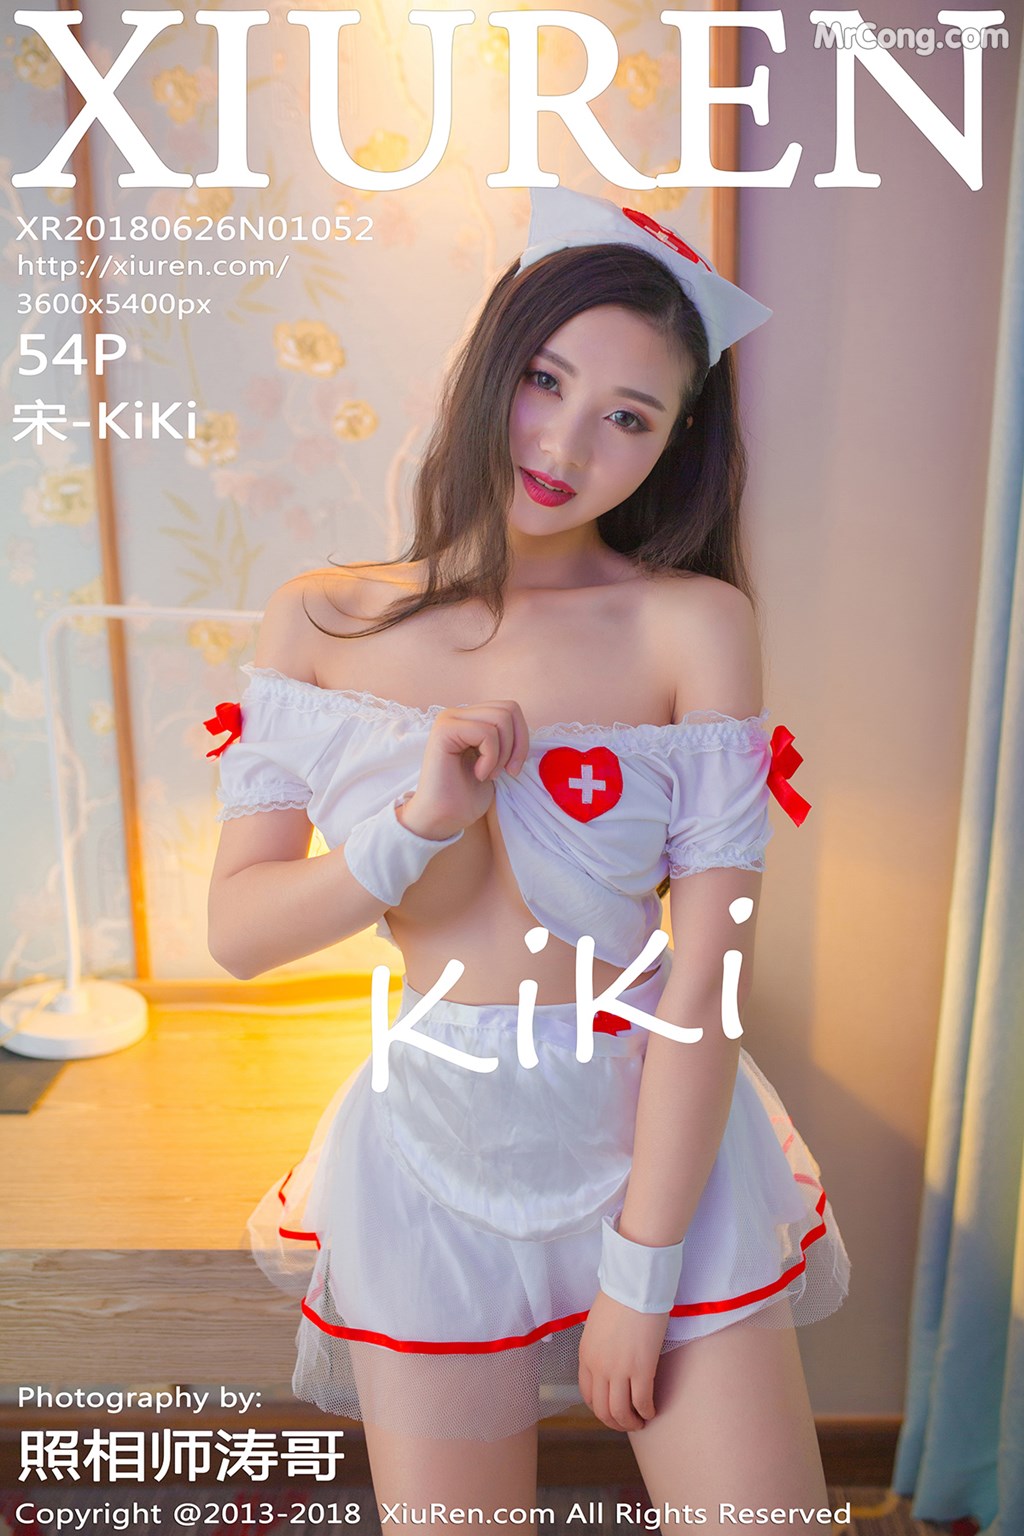 XIUREN No. 1052: Model 宋 -KiKi (55 photos)